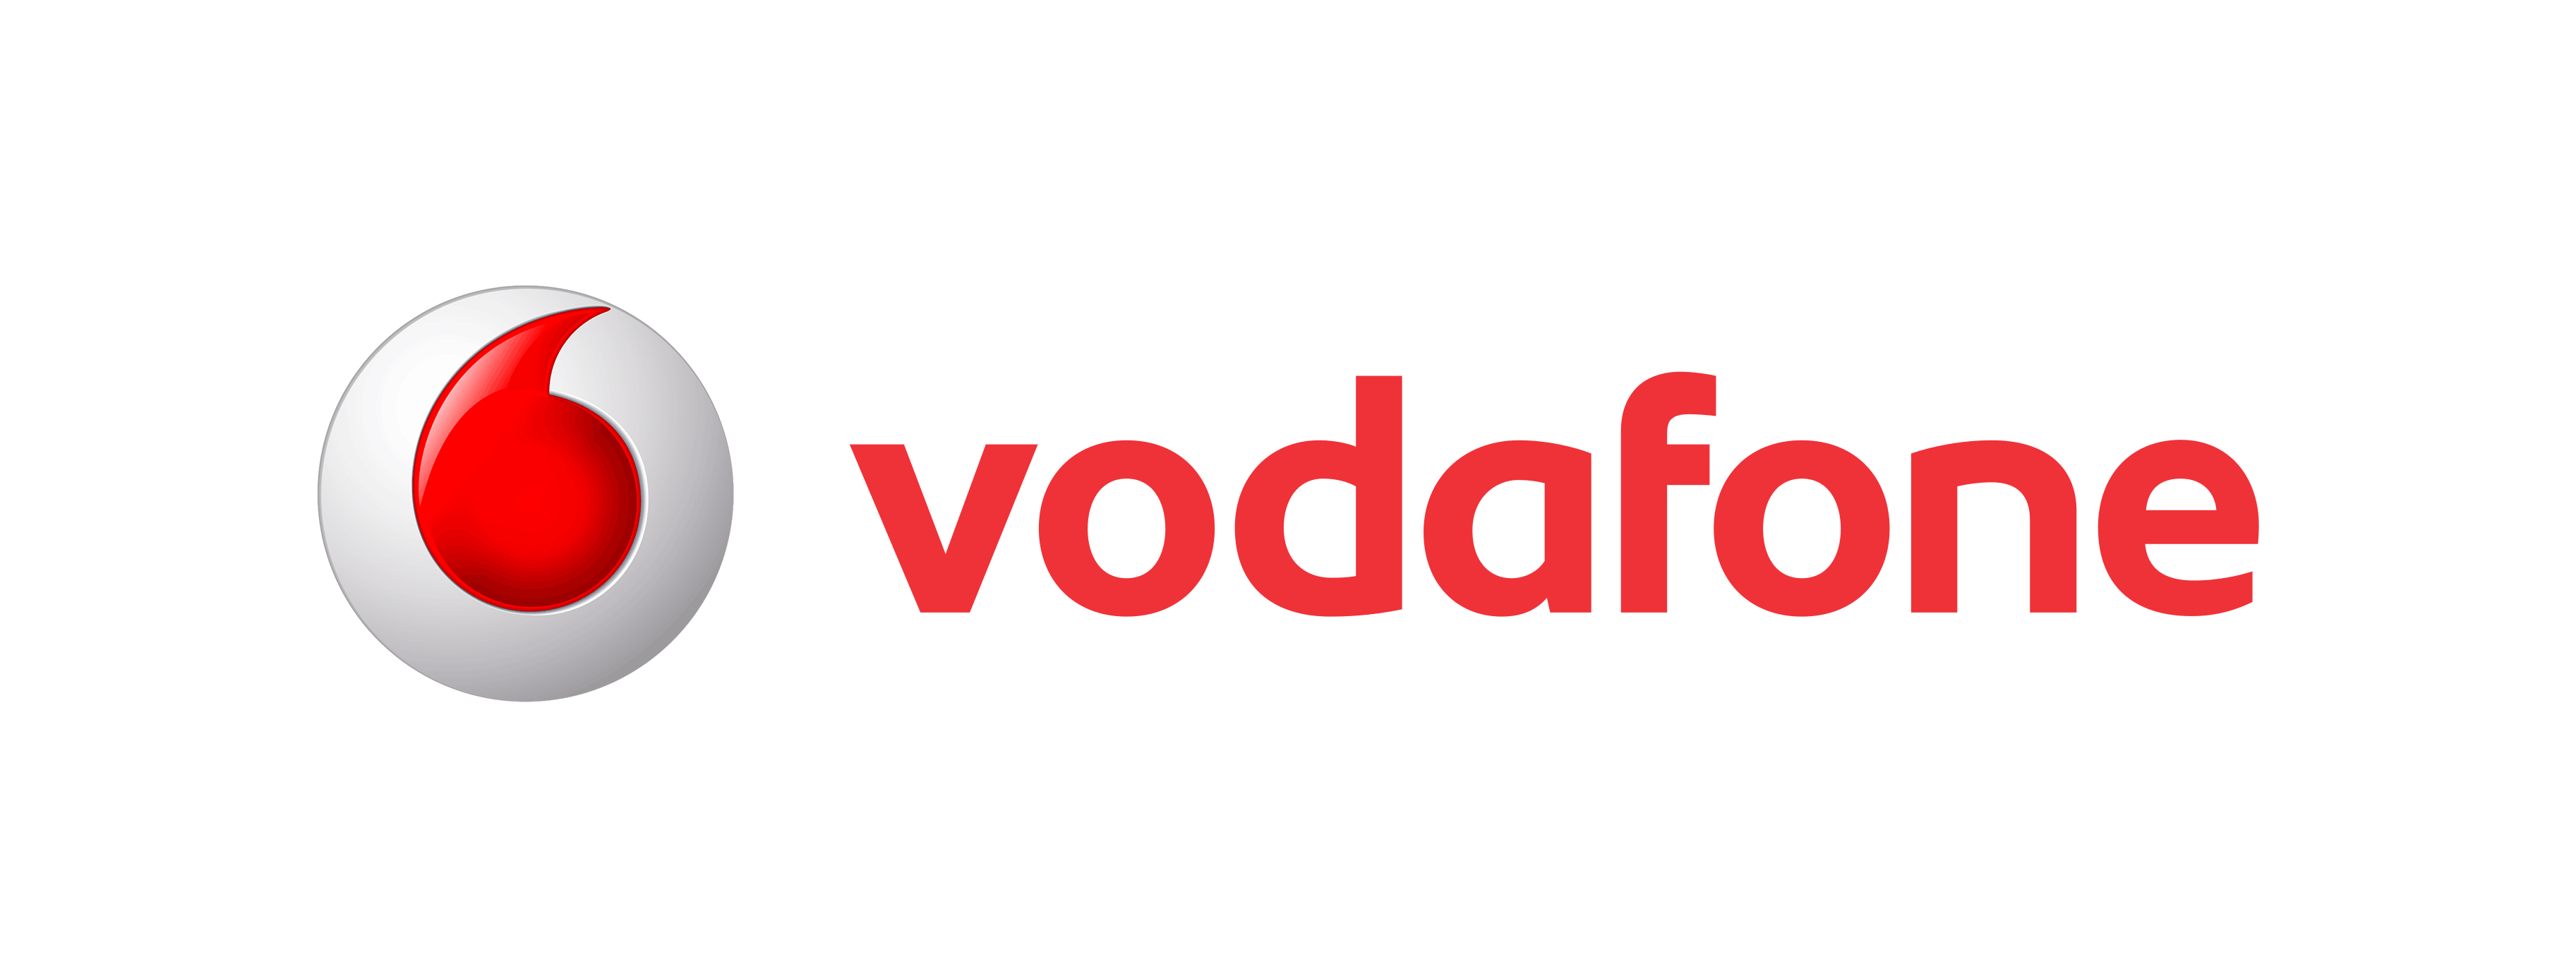 Vodafone Icon | Myiconfinder